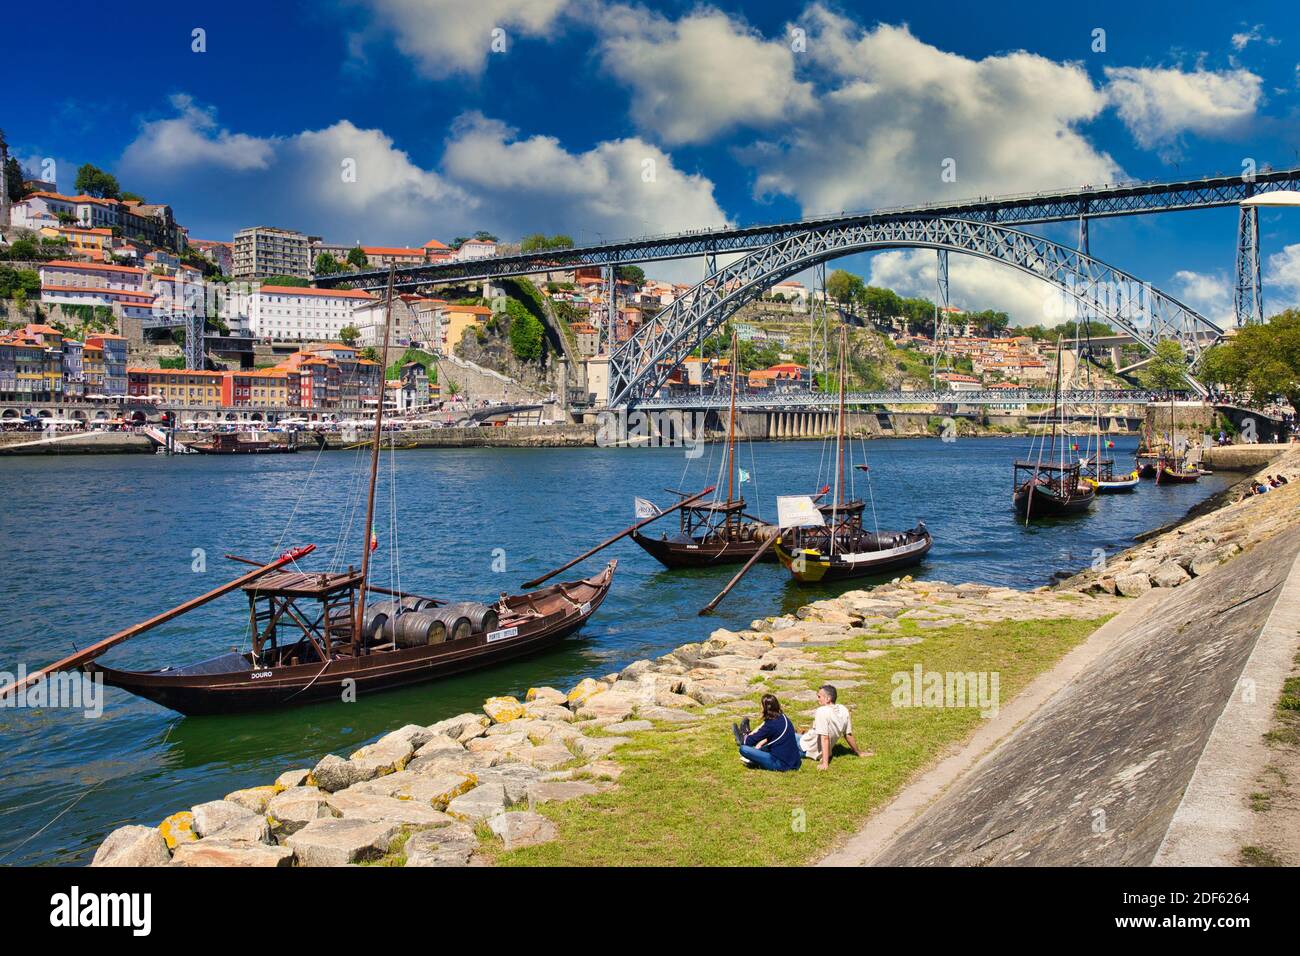 Traditional Portuguese wooden cargo boats transporting port wine, Rio Douro river, Vila Nova de Gaia, Ponte Dom Luis I bridge, Porto, Portugal Stock Photo